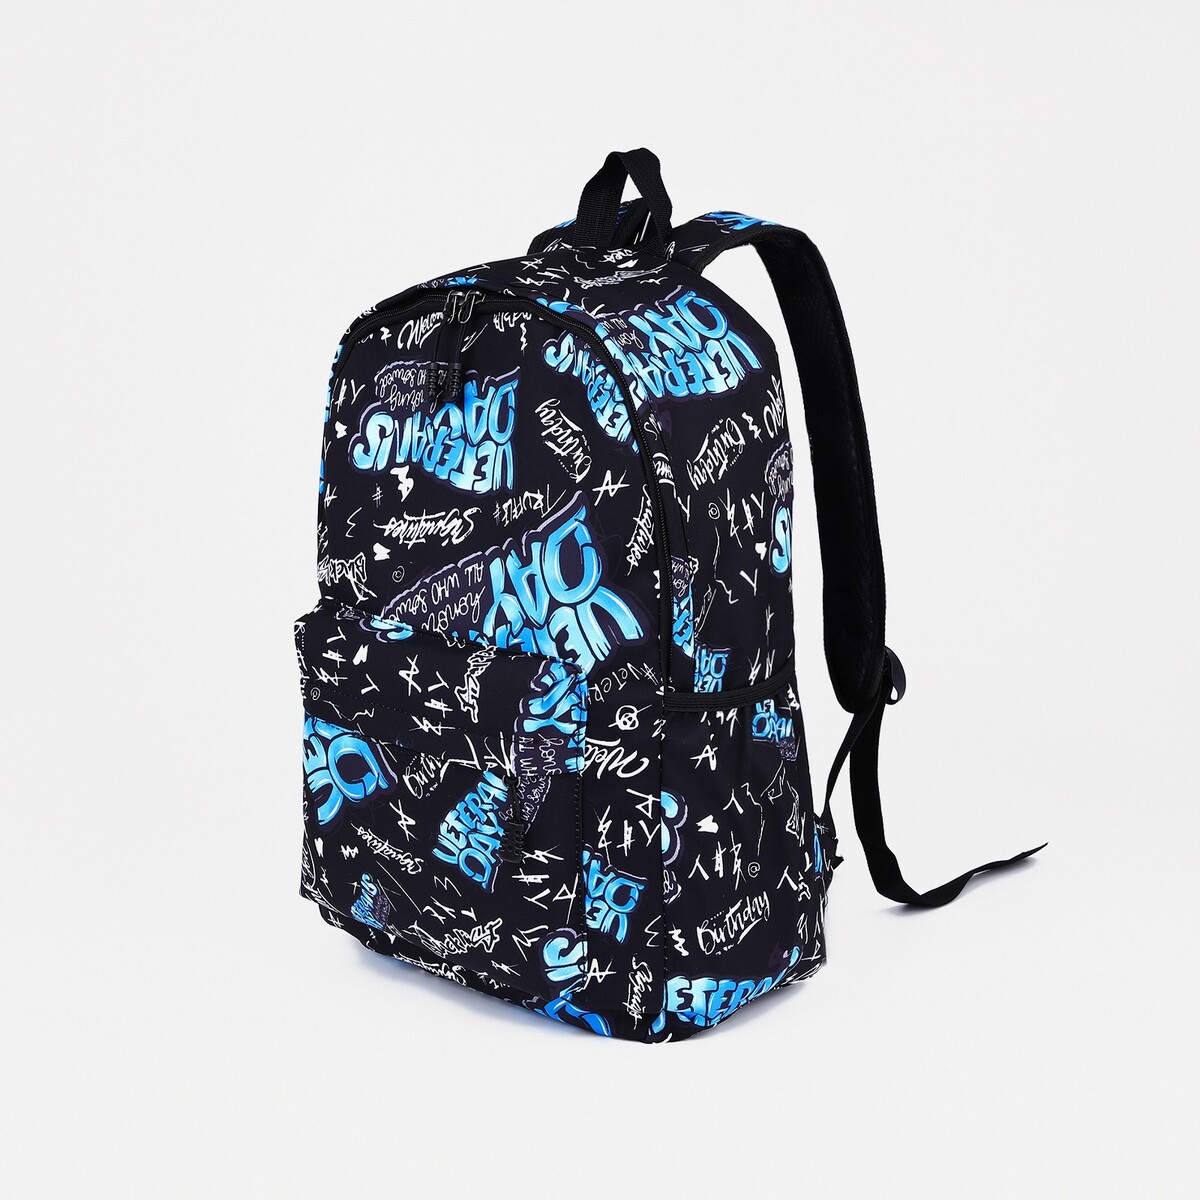 Рюкзак на молнии, 3 наружных кармана, цвет синий/черный рюкзак туристический на молнии 4 наружных кармана синий